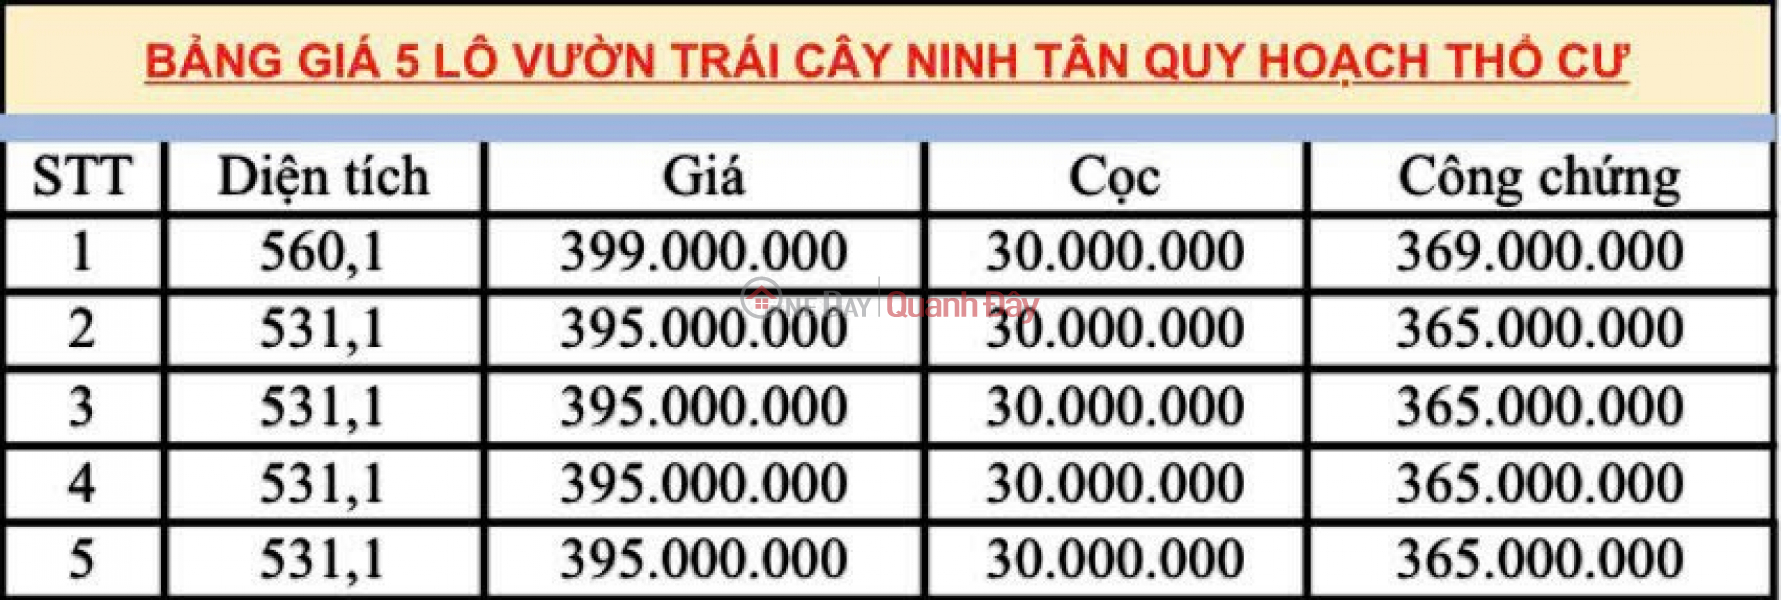 ĐẤT NÊN TIỀM NĂNG Vietnam Sales, đ 395 Million